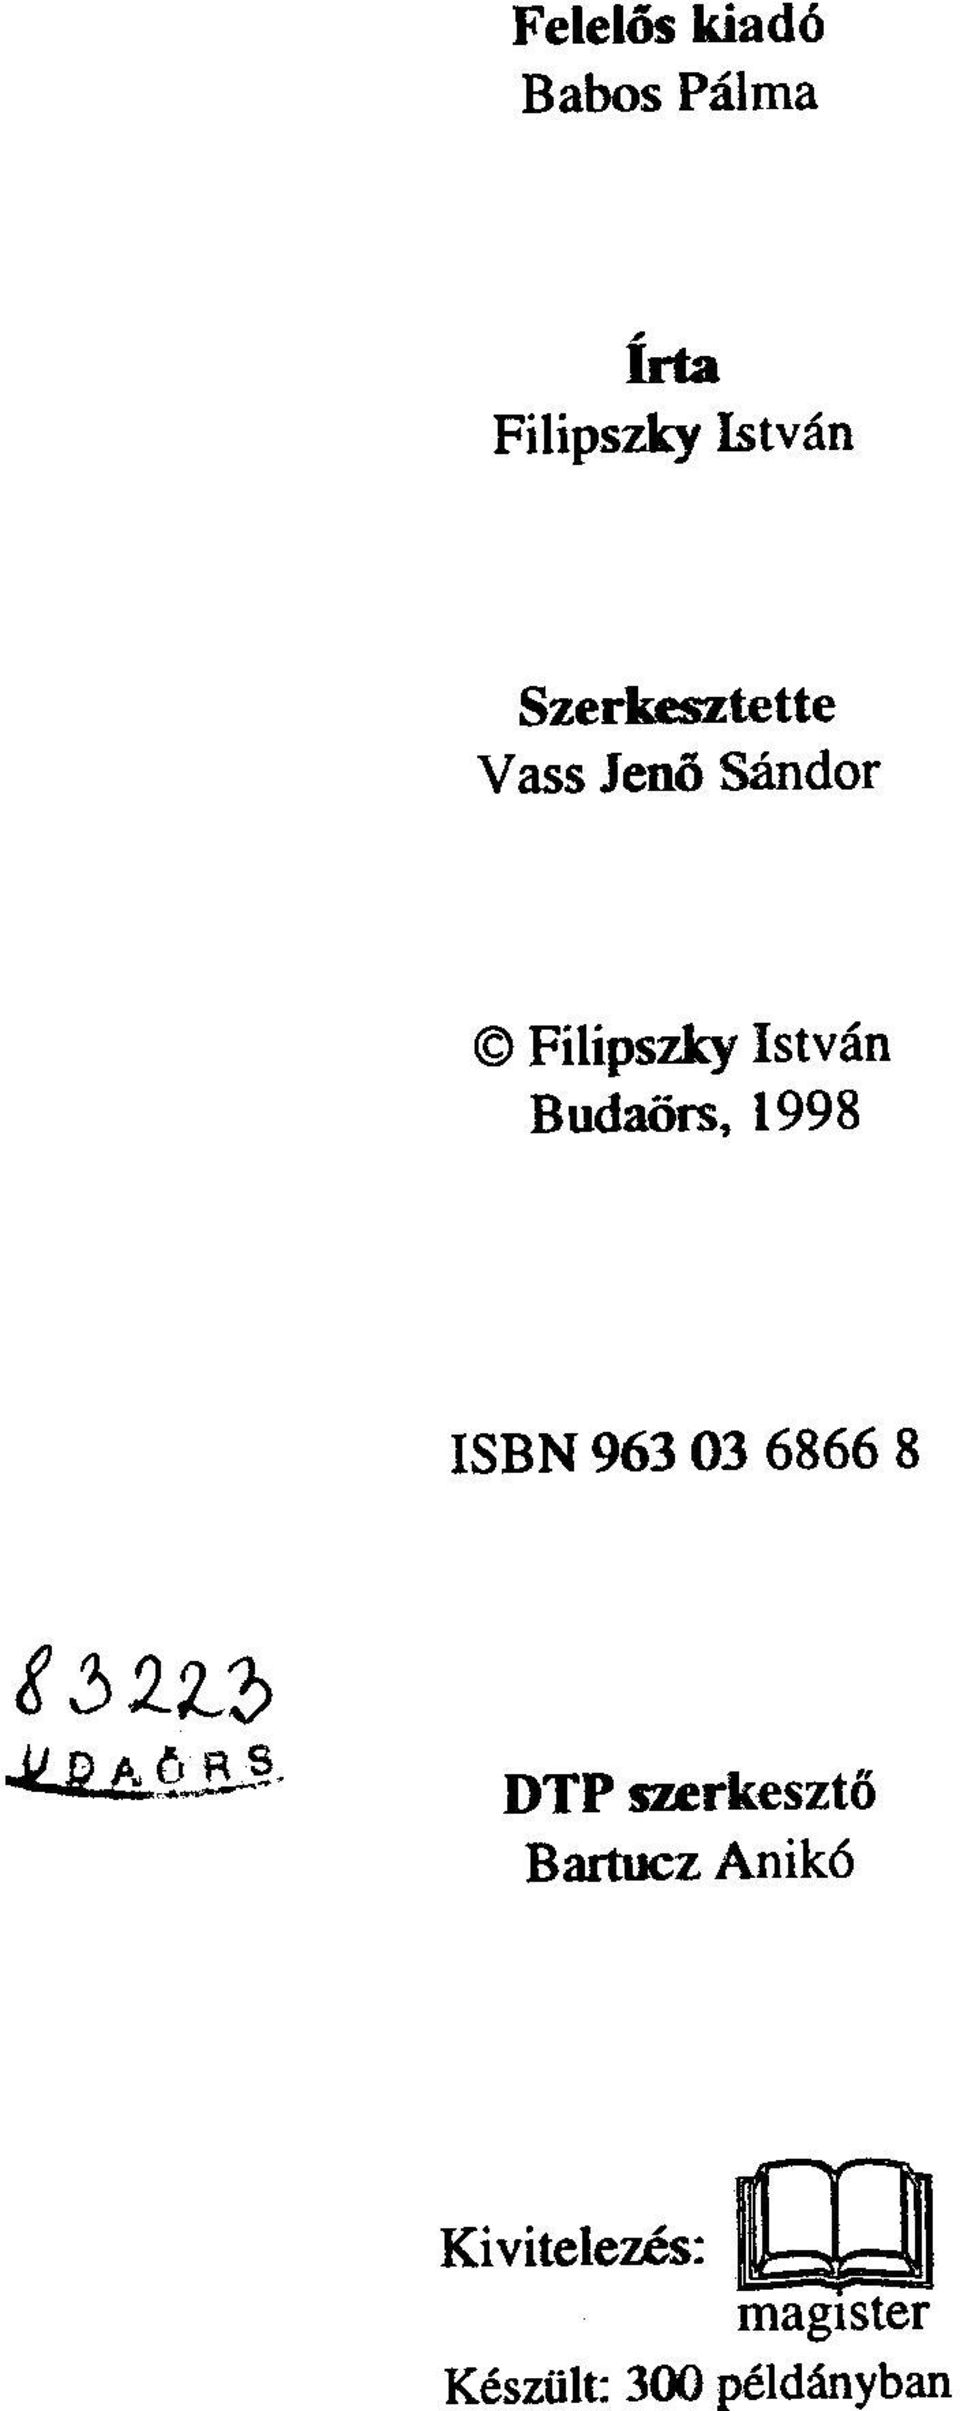 BudaOrs, 1998 ISBN 963 03 6866 8 t.?j2.z-:?~y~!?;.